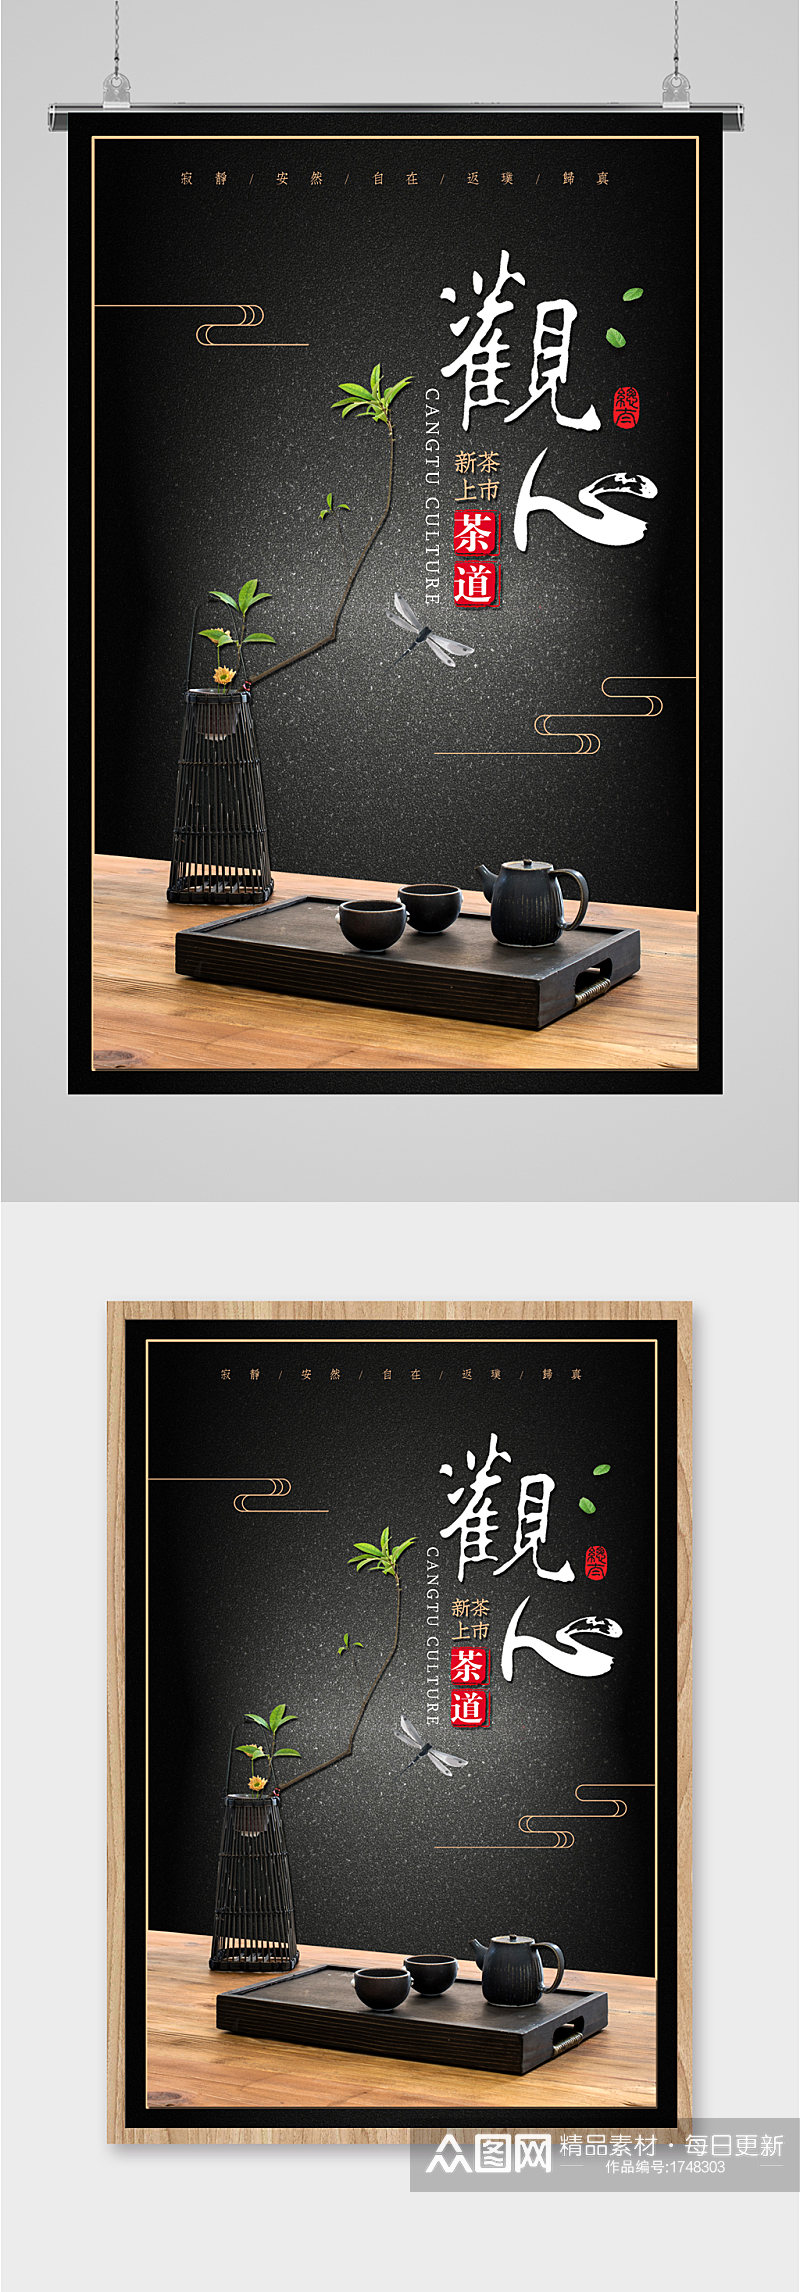 黑色高端茶艺设计海报素材